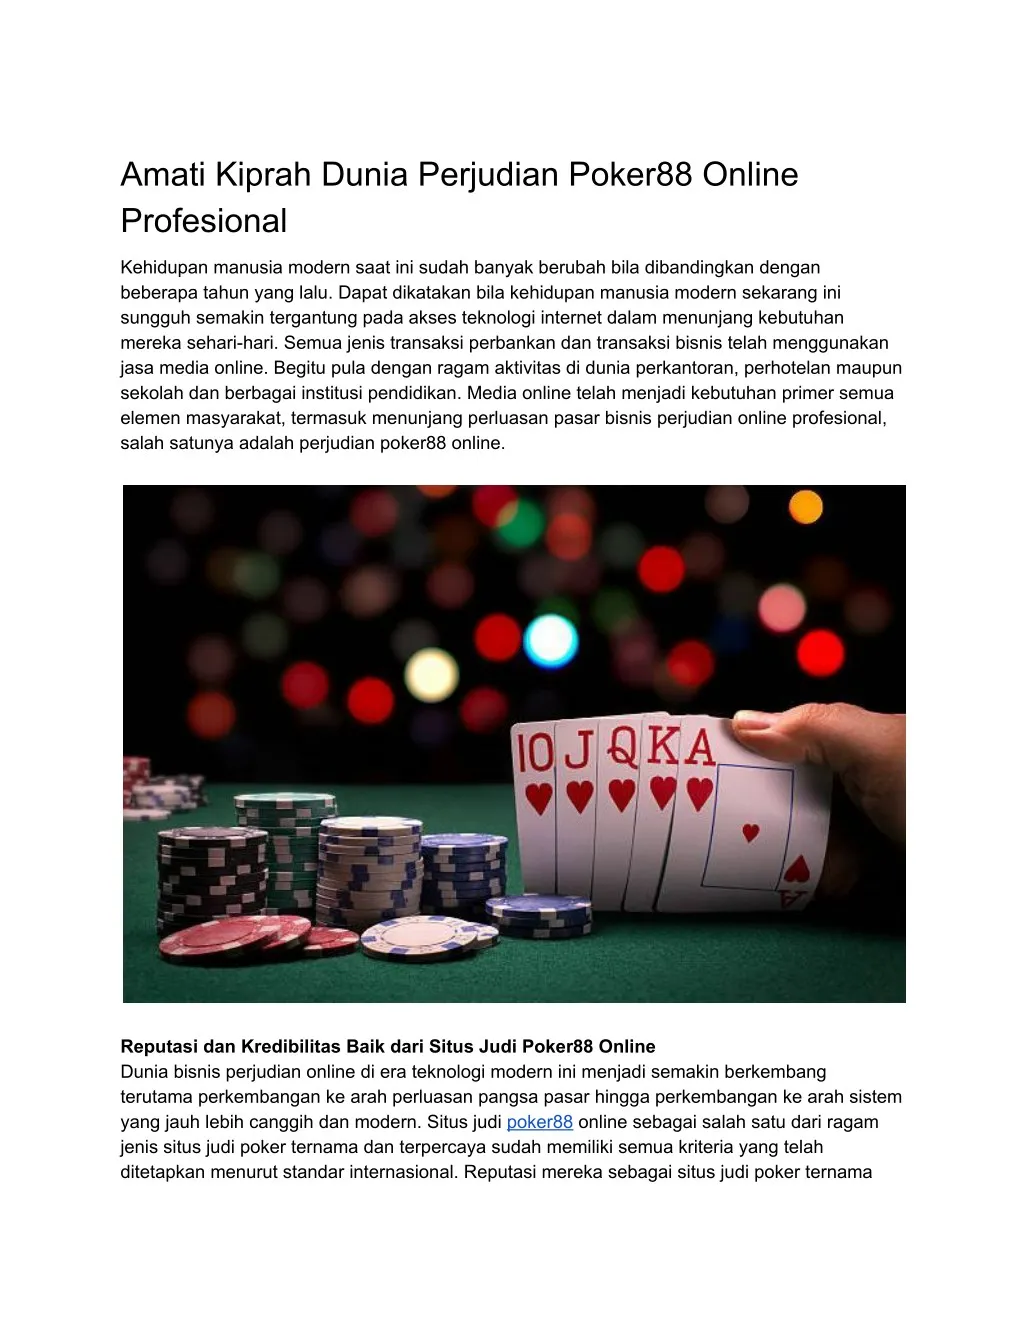 amati kiprah dunia perjudian poker88 online